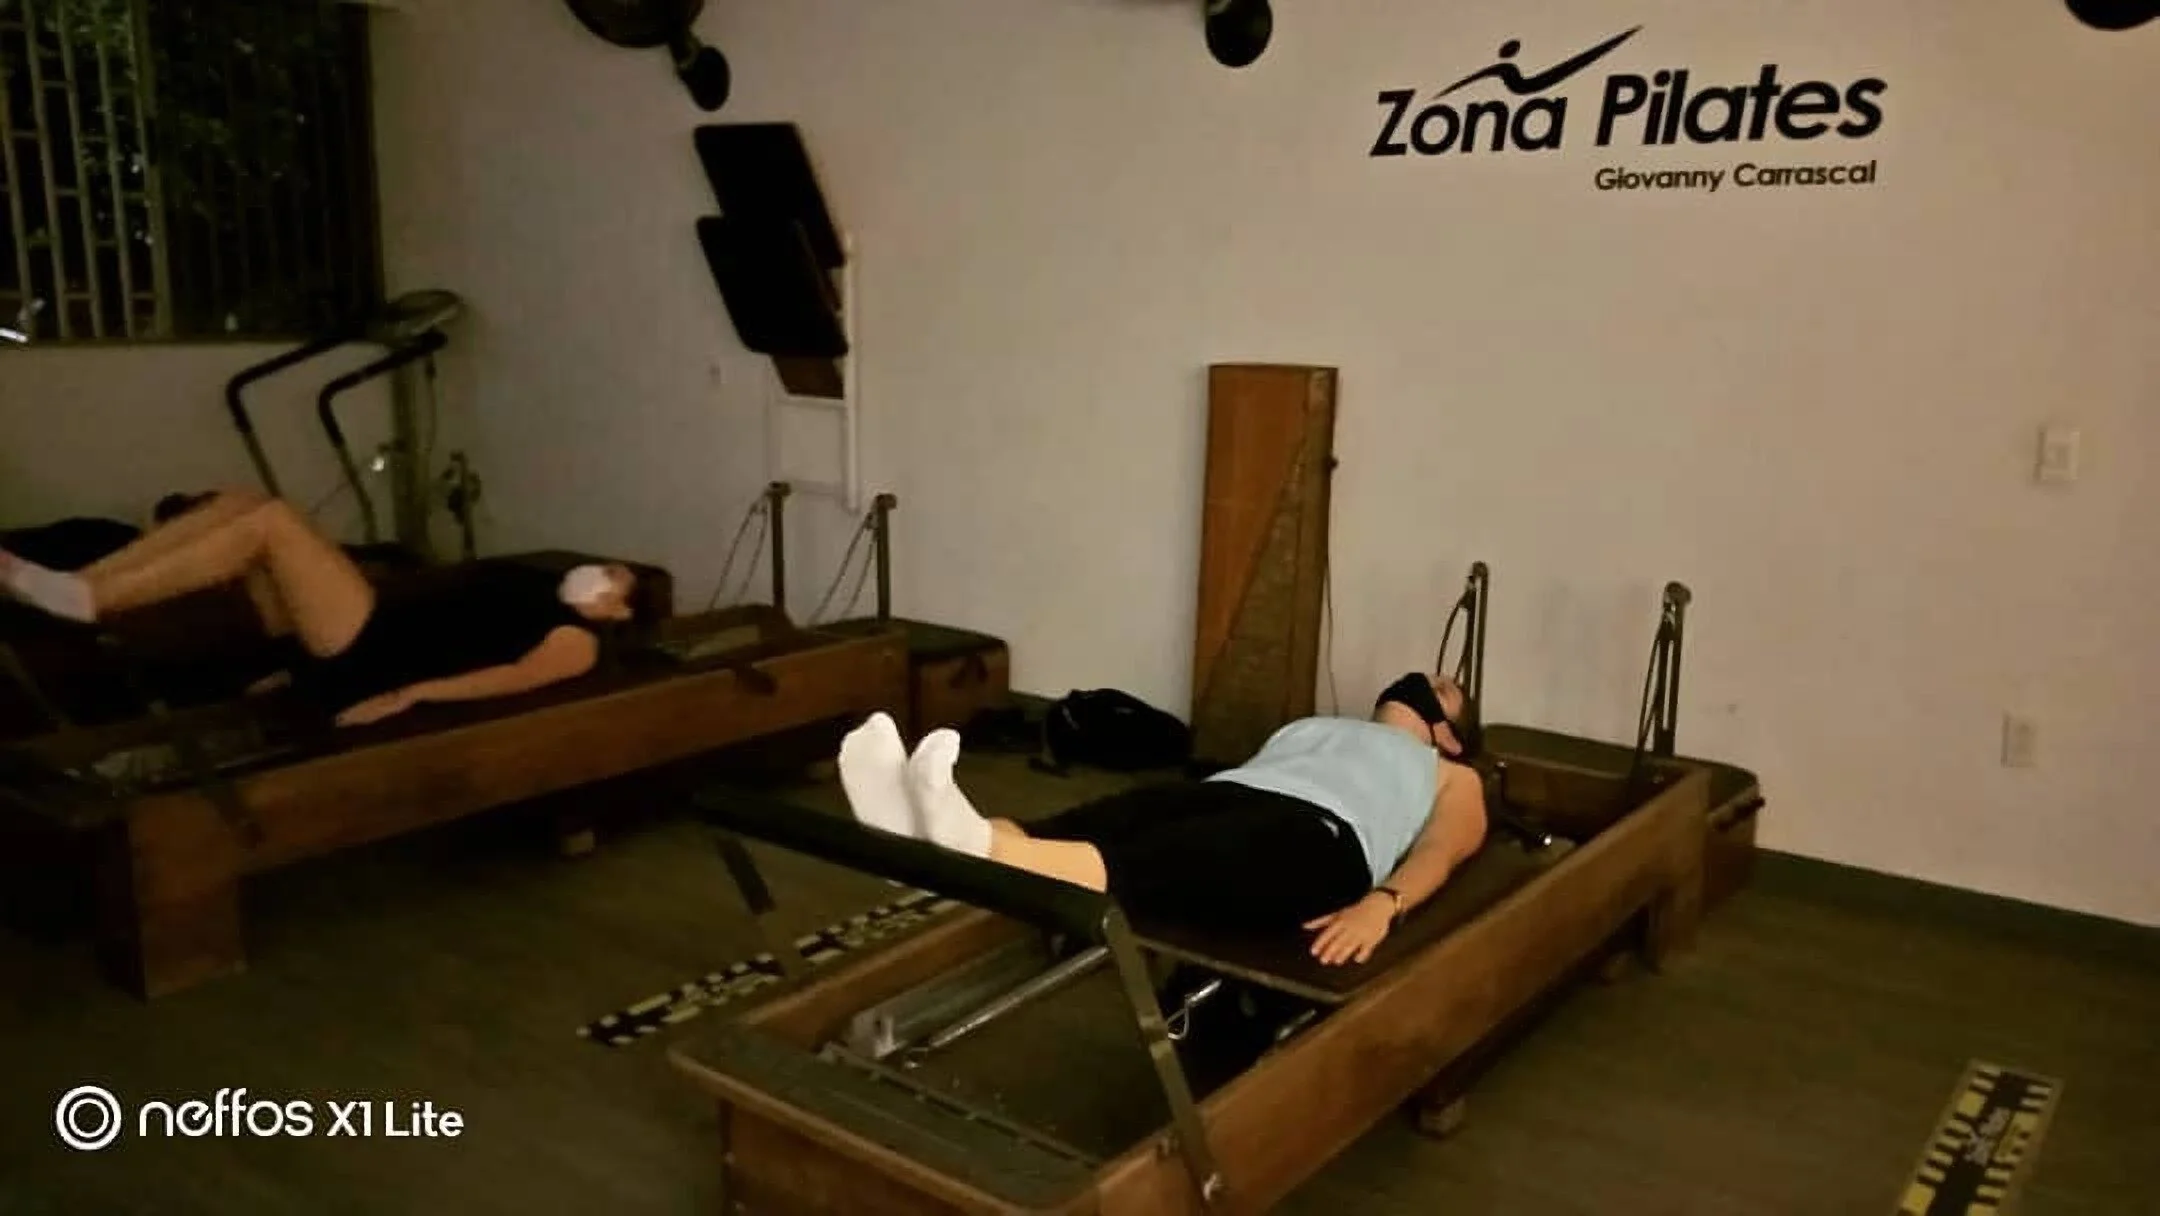 Pilates-zona-pilates-8177